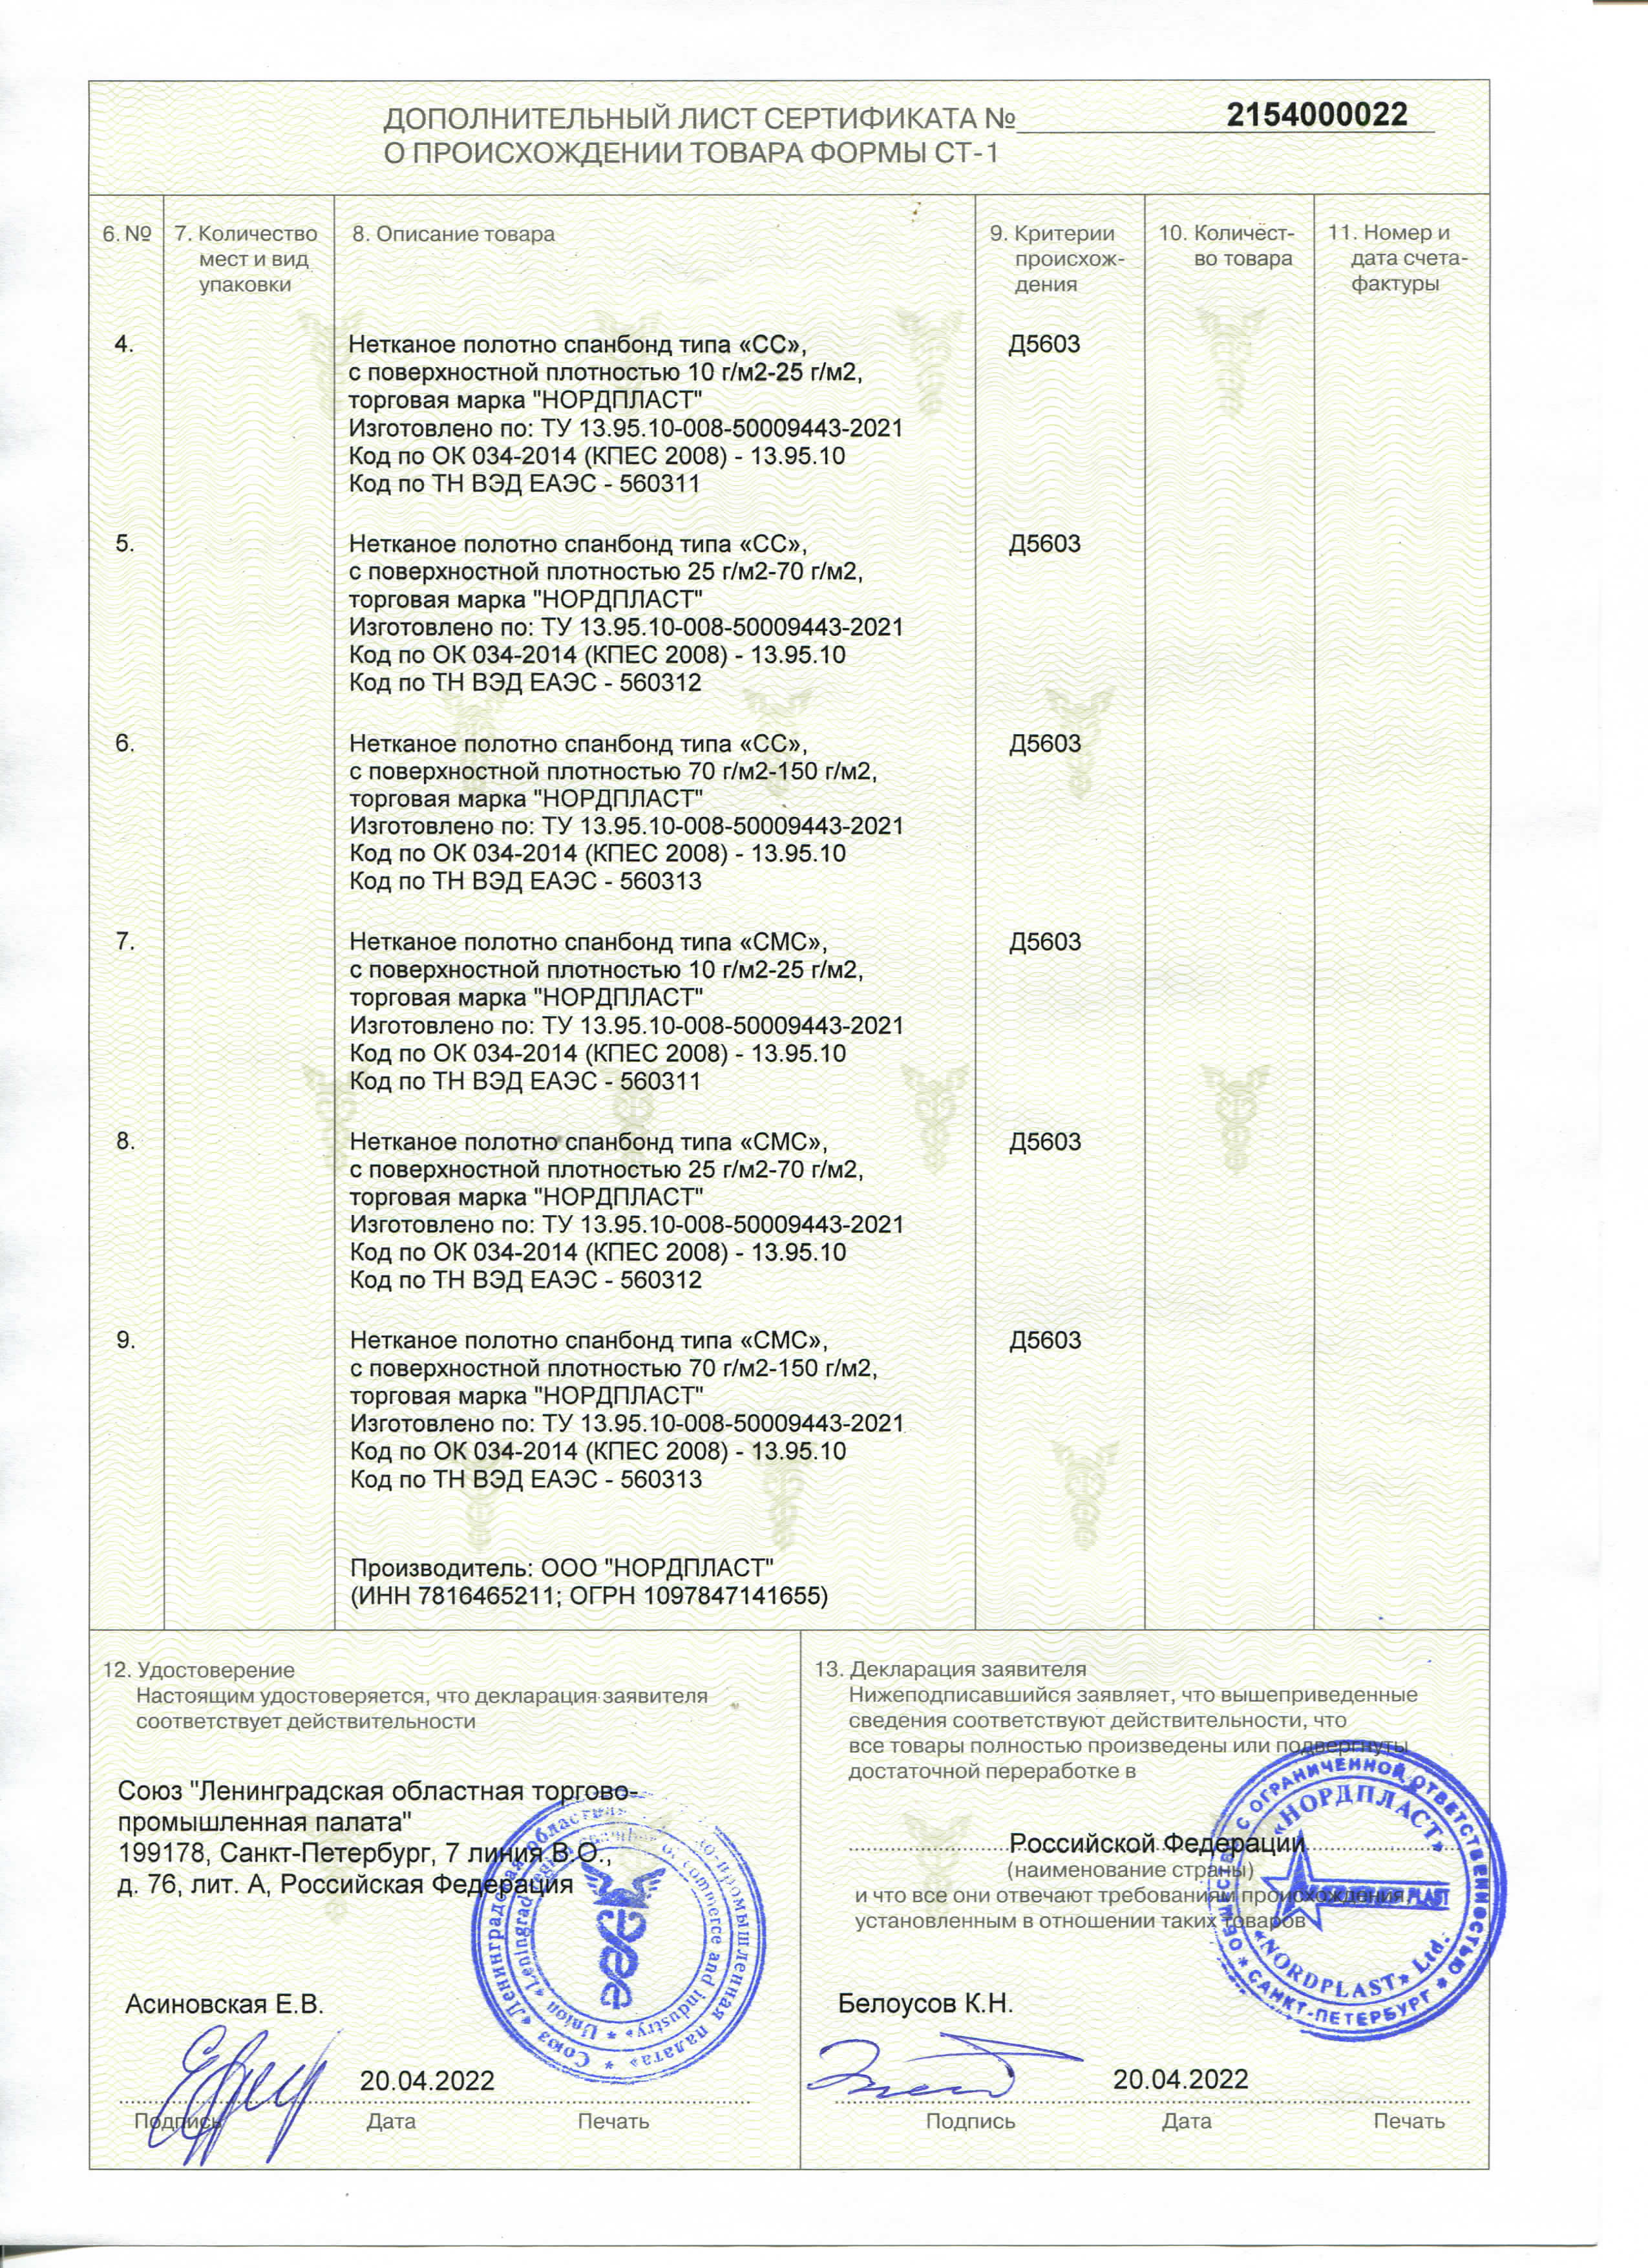 сертификат СТ-1 на спанбонд 1_Страница_2.jpg